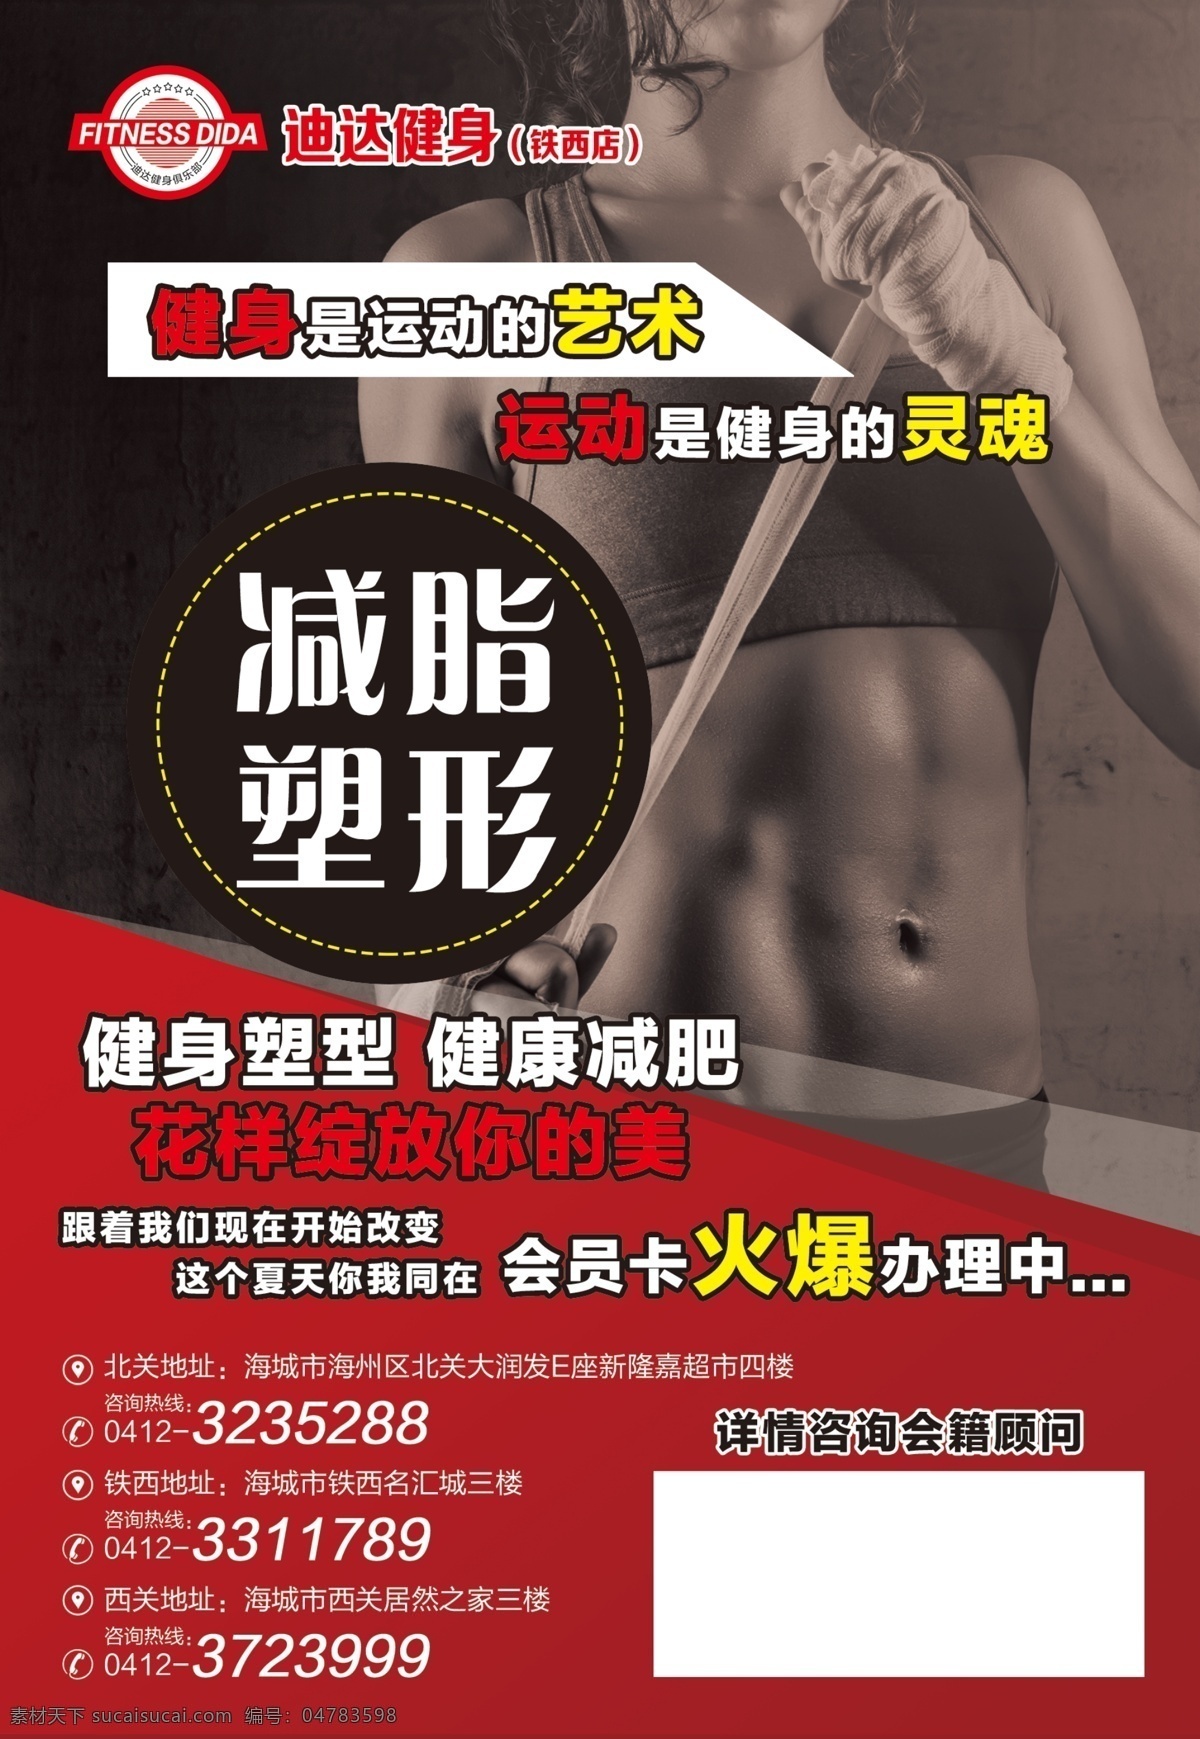 健身传单 健身 传单 海报 宣传 设计排版